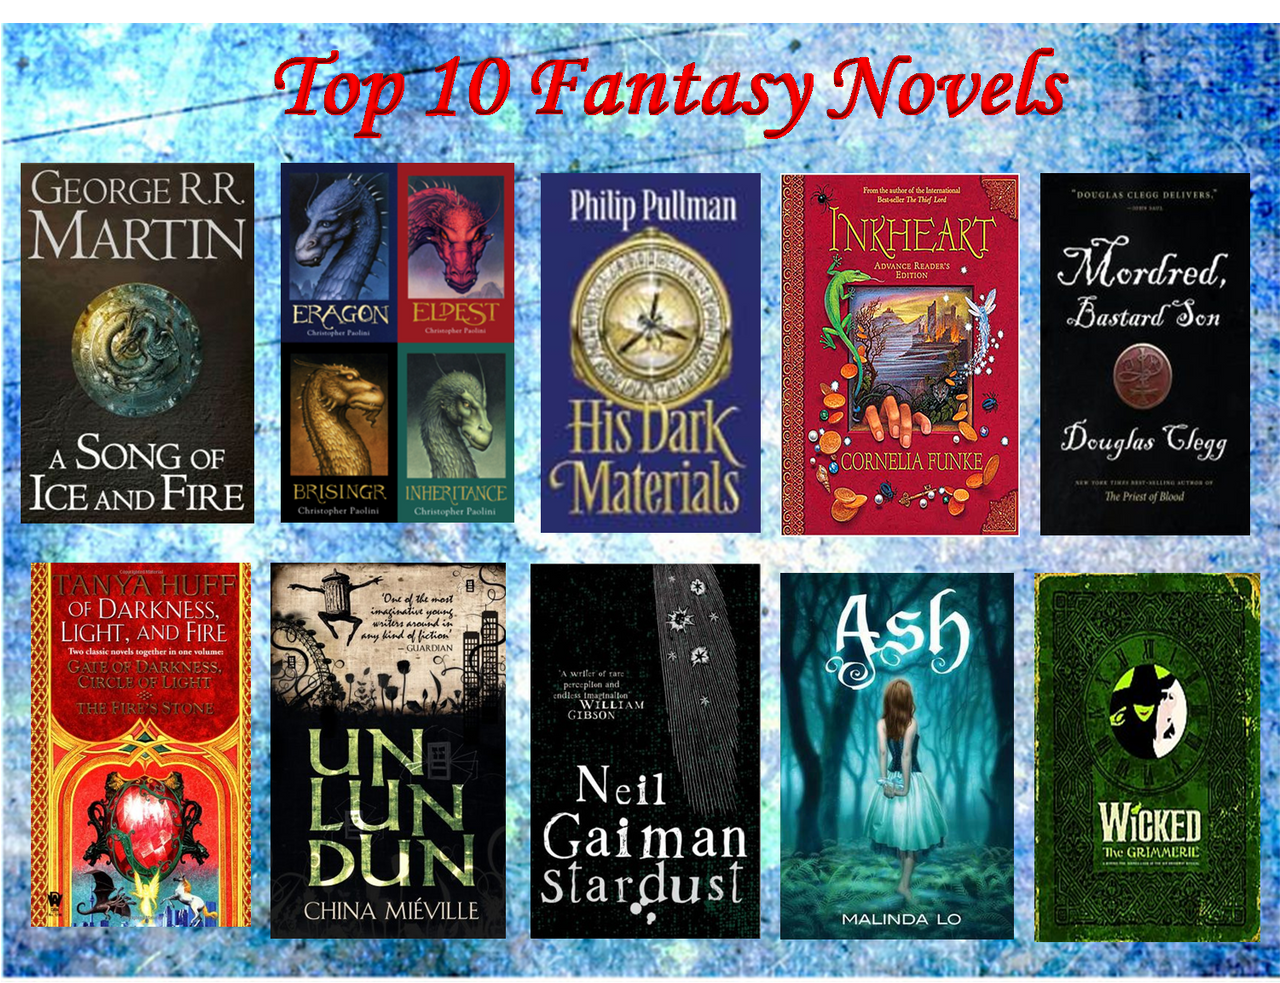 Top 10 Fantasy Novels by LadyBladeWarAgnel on DeviantArt